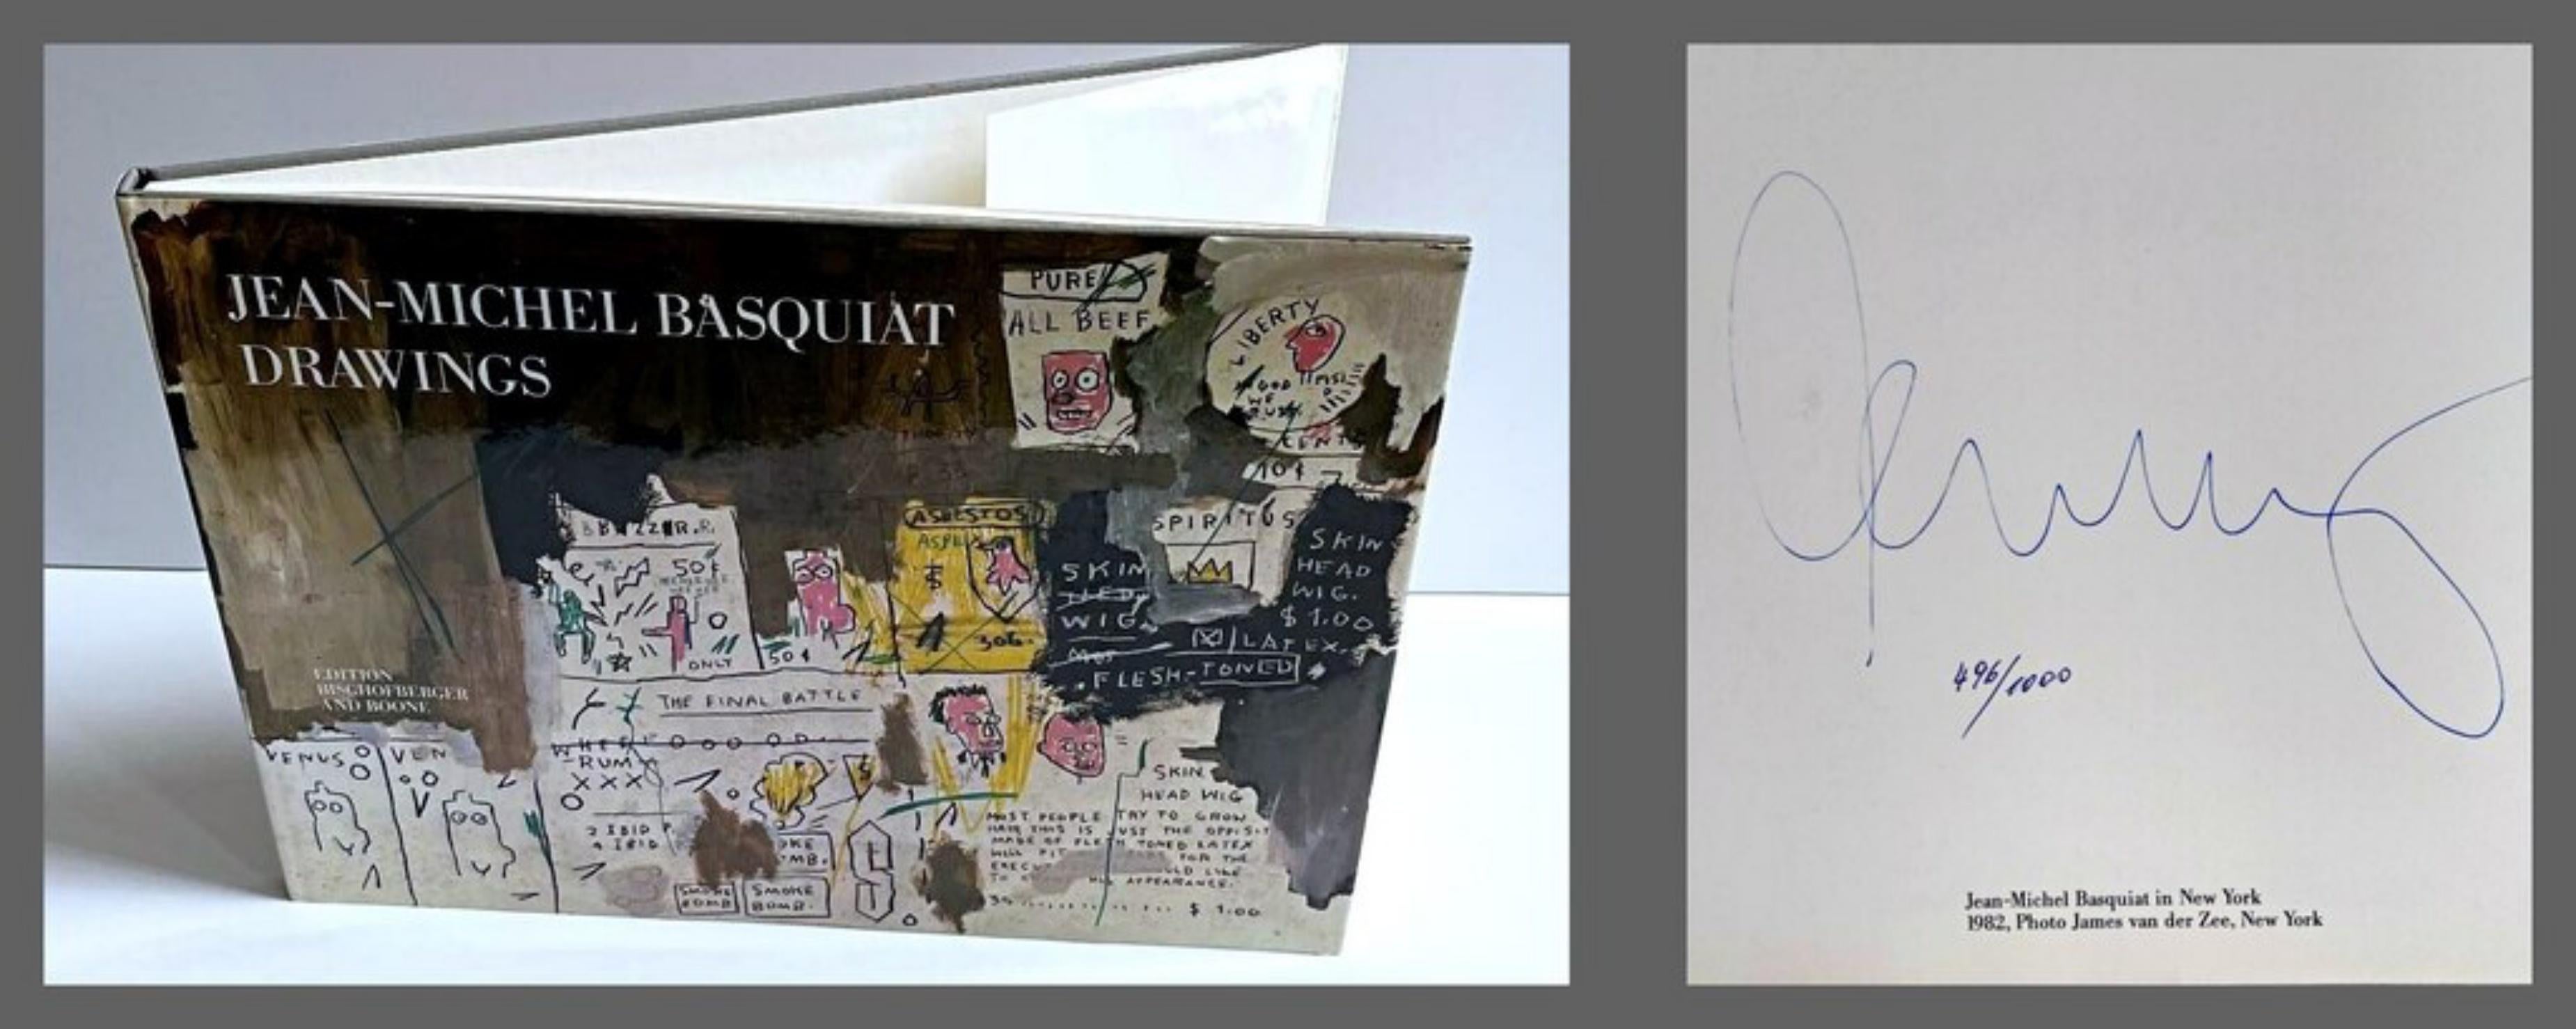 Lt. Ed. Monografía de dibujos, firmada a mano y numerada por Jean-Michel Basquiat  en venta 2